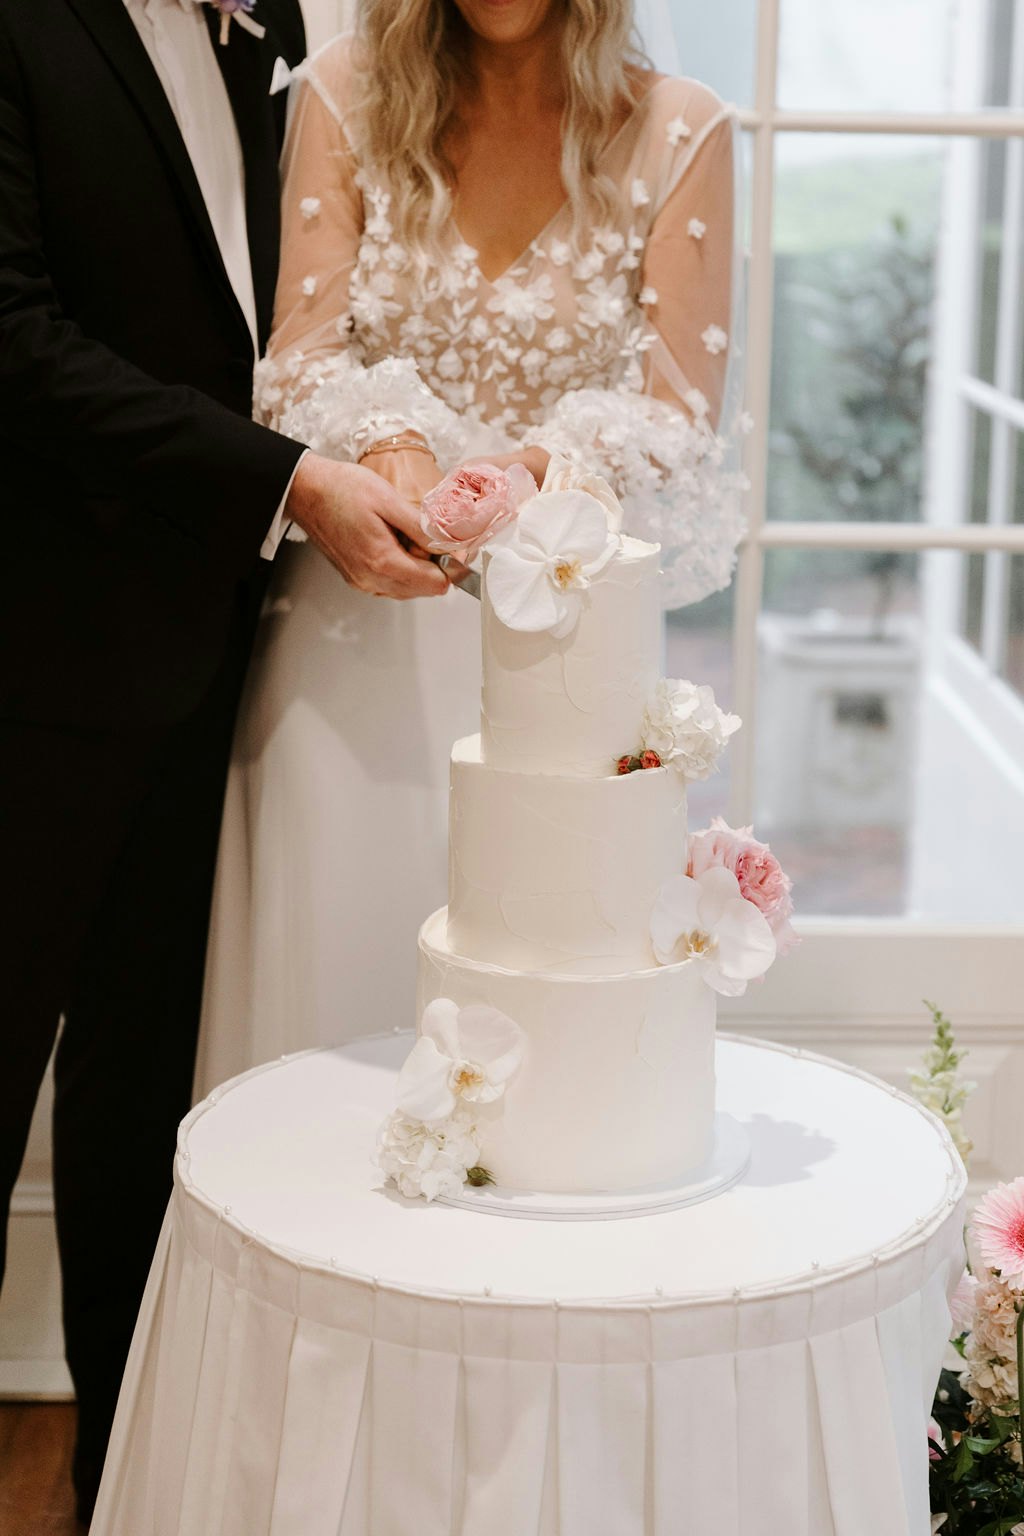 Bride cutting wedding cake